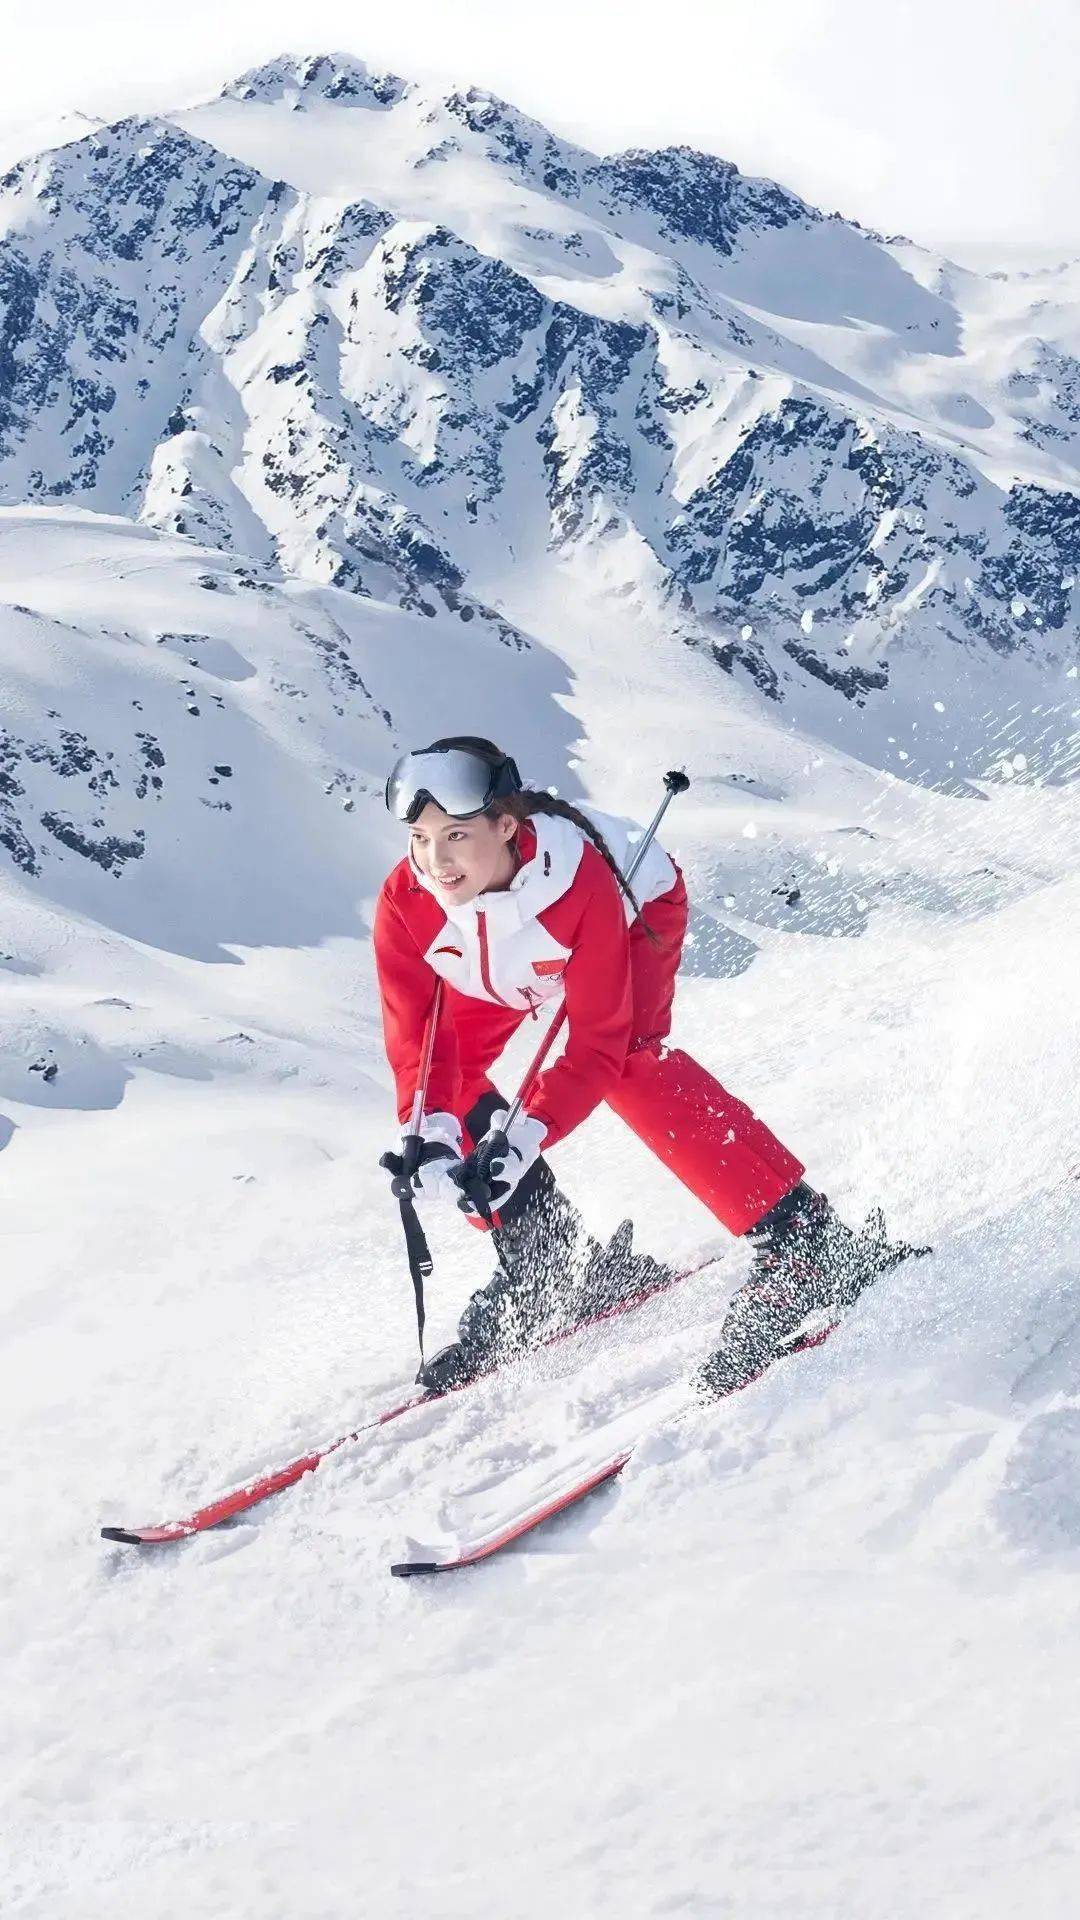 天才滑雪少女谷爱凌录取斯坦福大学一边备战奥运会一边拿下sat1580